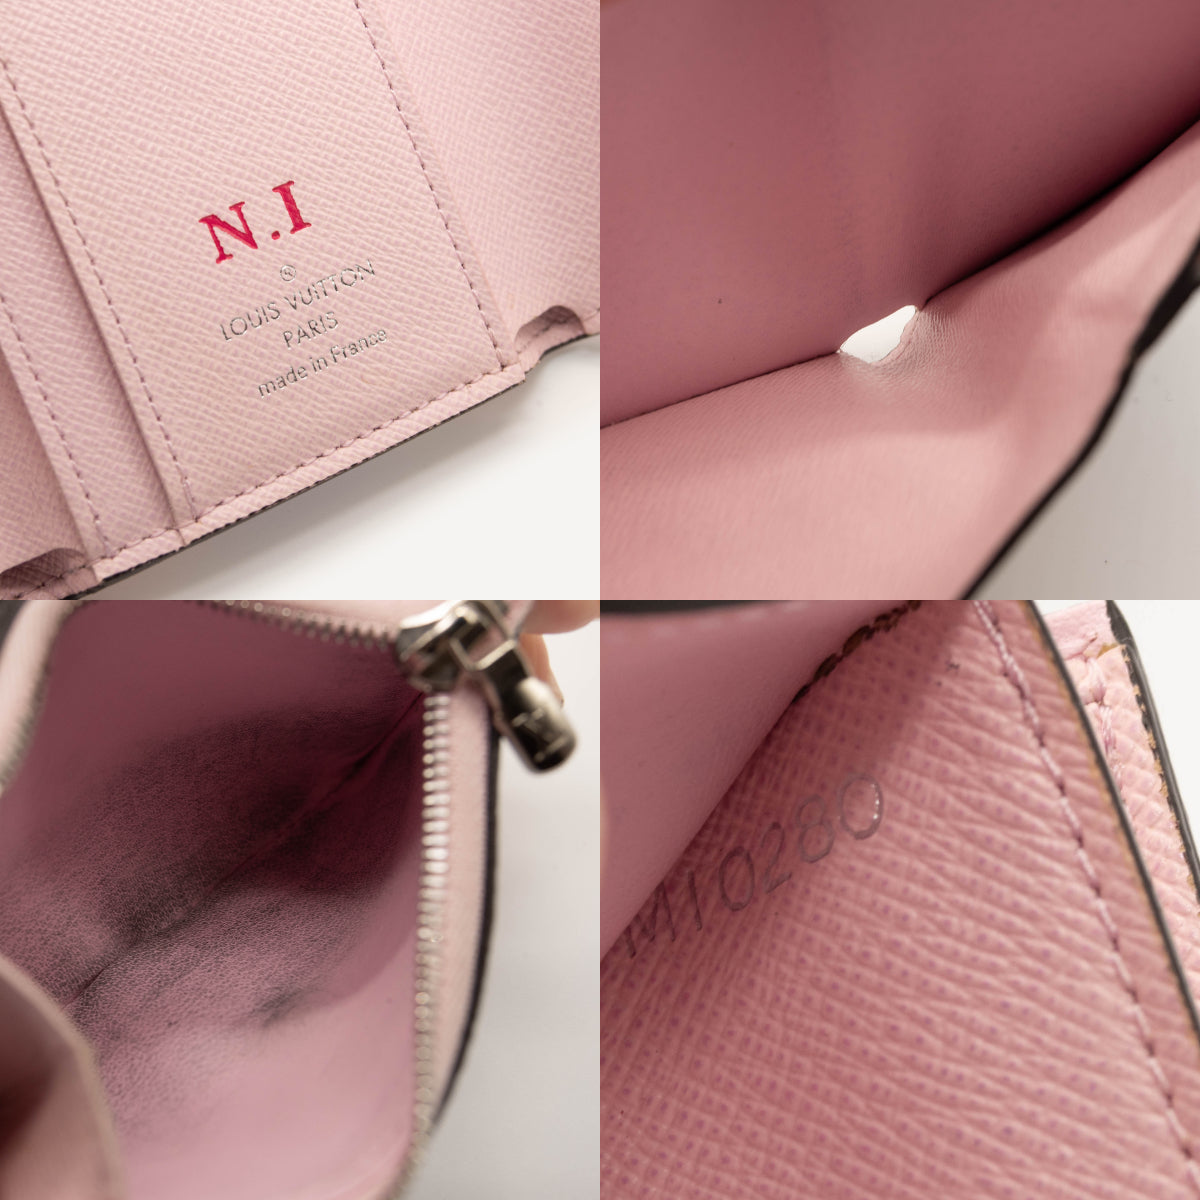 Louis Vuitton Empreinte Victorine Wallet in Red Pink